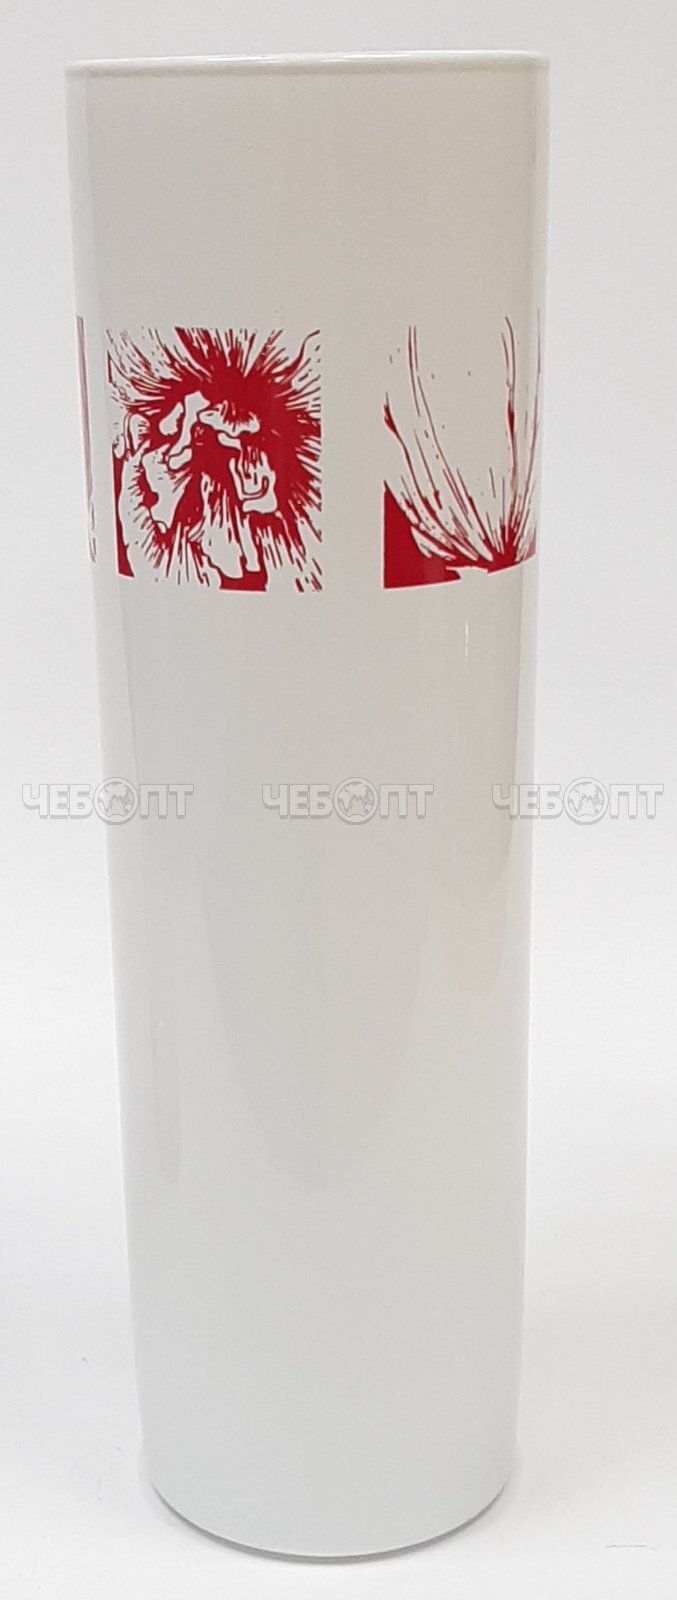 Ваза для цветов 265 мм ФЛОРИС белая с красным рисунком закаленное стекло арт. 43767/DPP [12] АРДЕККО. ЧЕБОПТ.